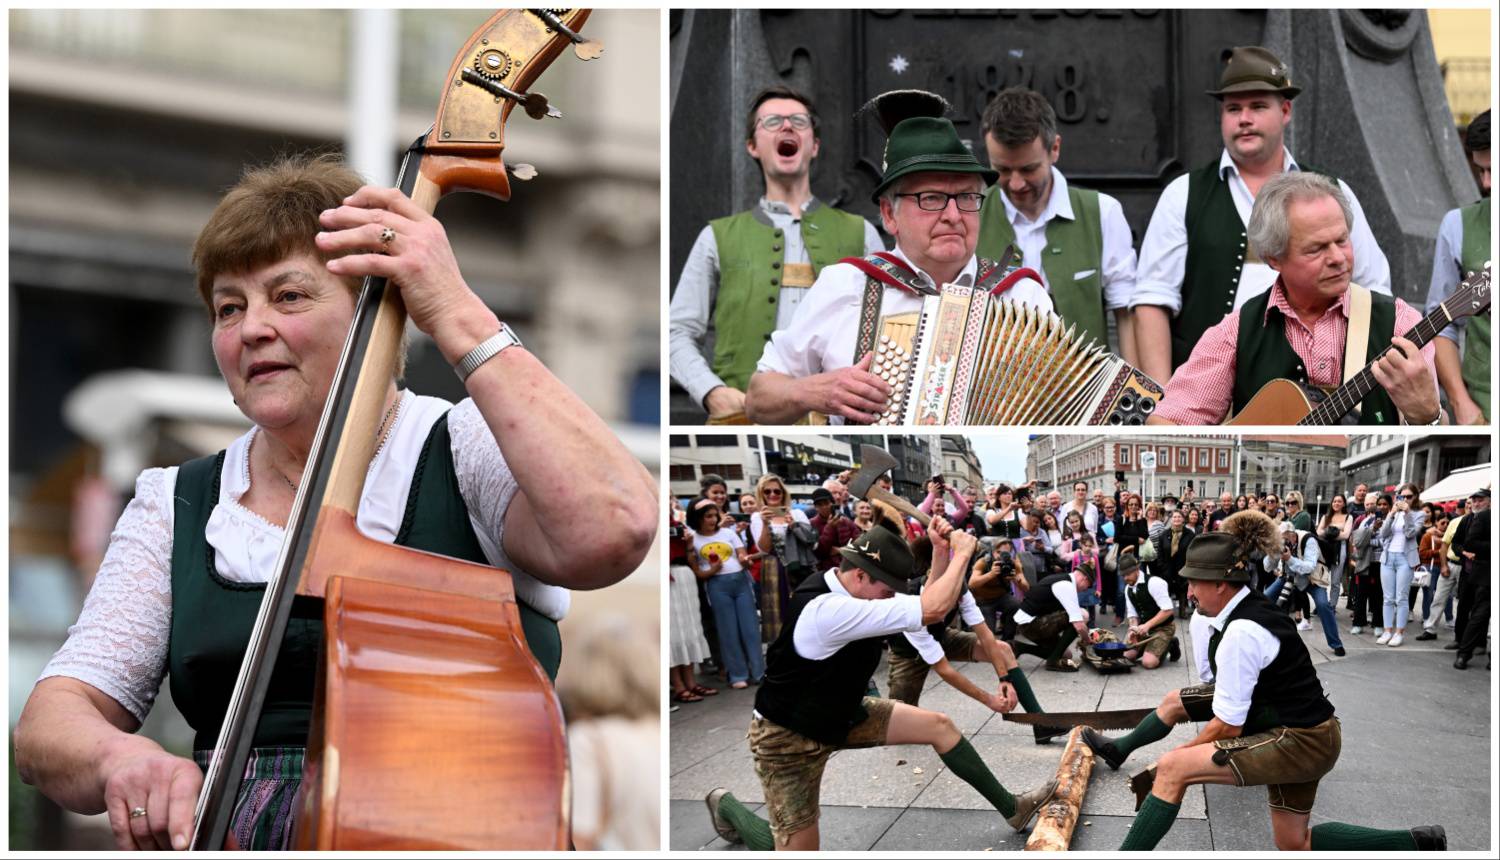 Štajerska tradicionalna glazba i ples u centru Zagreba okupili su brojne: 'Treba nam više ovog!'